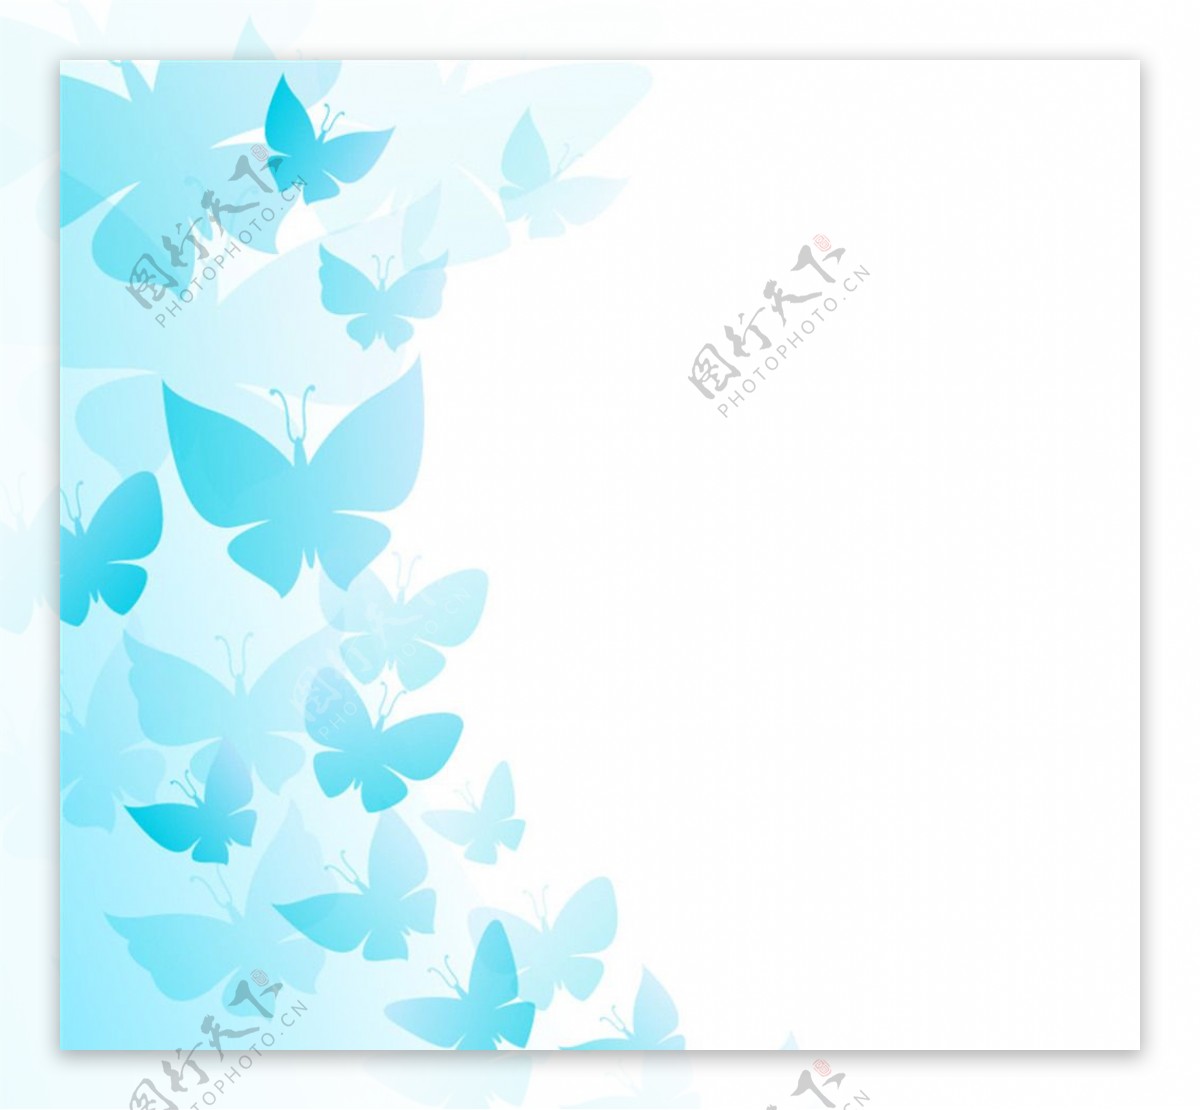 蓝色蝴蝶装饰背景矢量素材